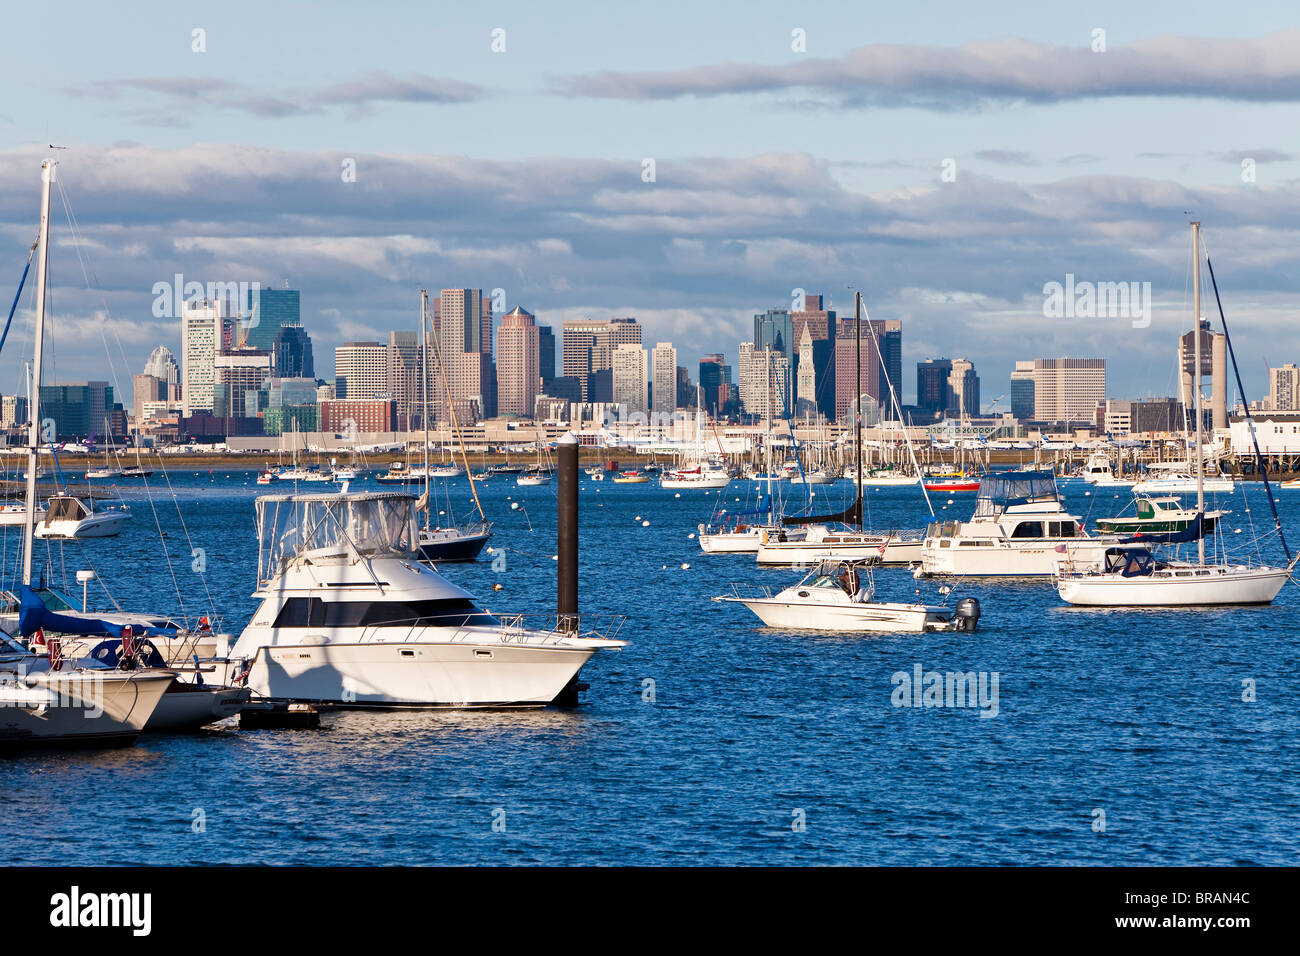 Sur les toits de la ville et des bateaux amarrés dans le port, Boston, Massachusetts, New England, États-Unis d'Amérique, Amérique du Nord Banque D'Images